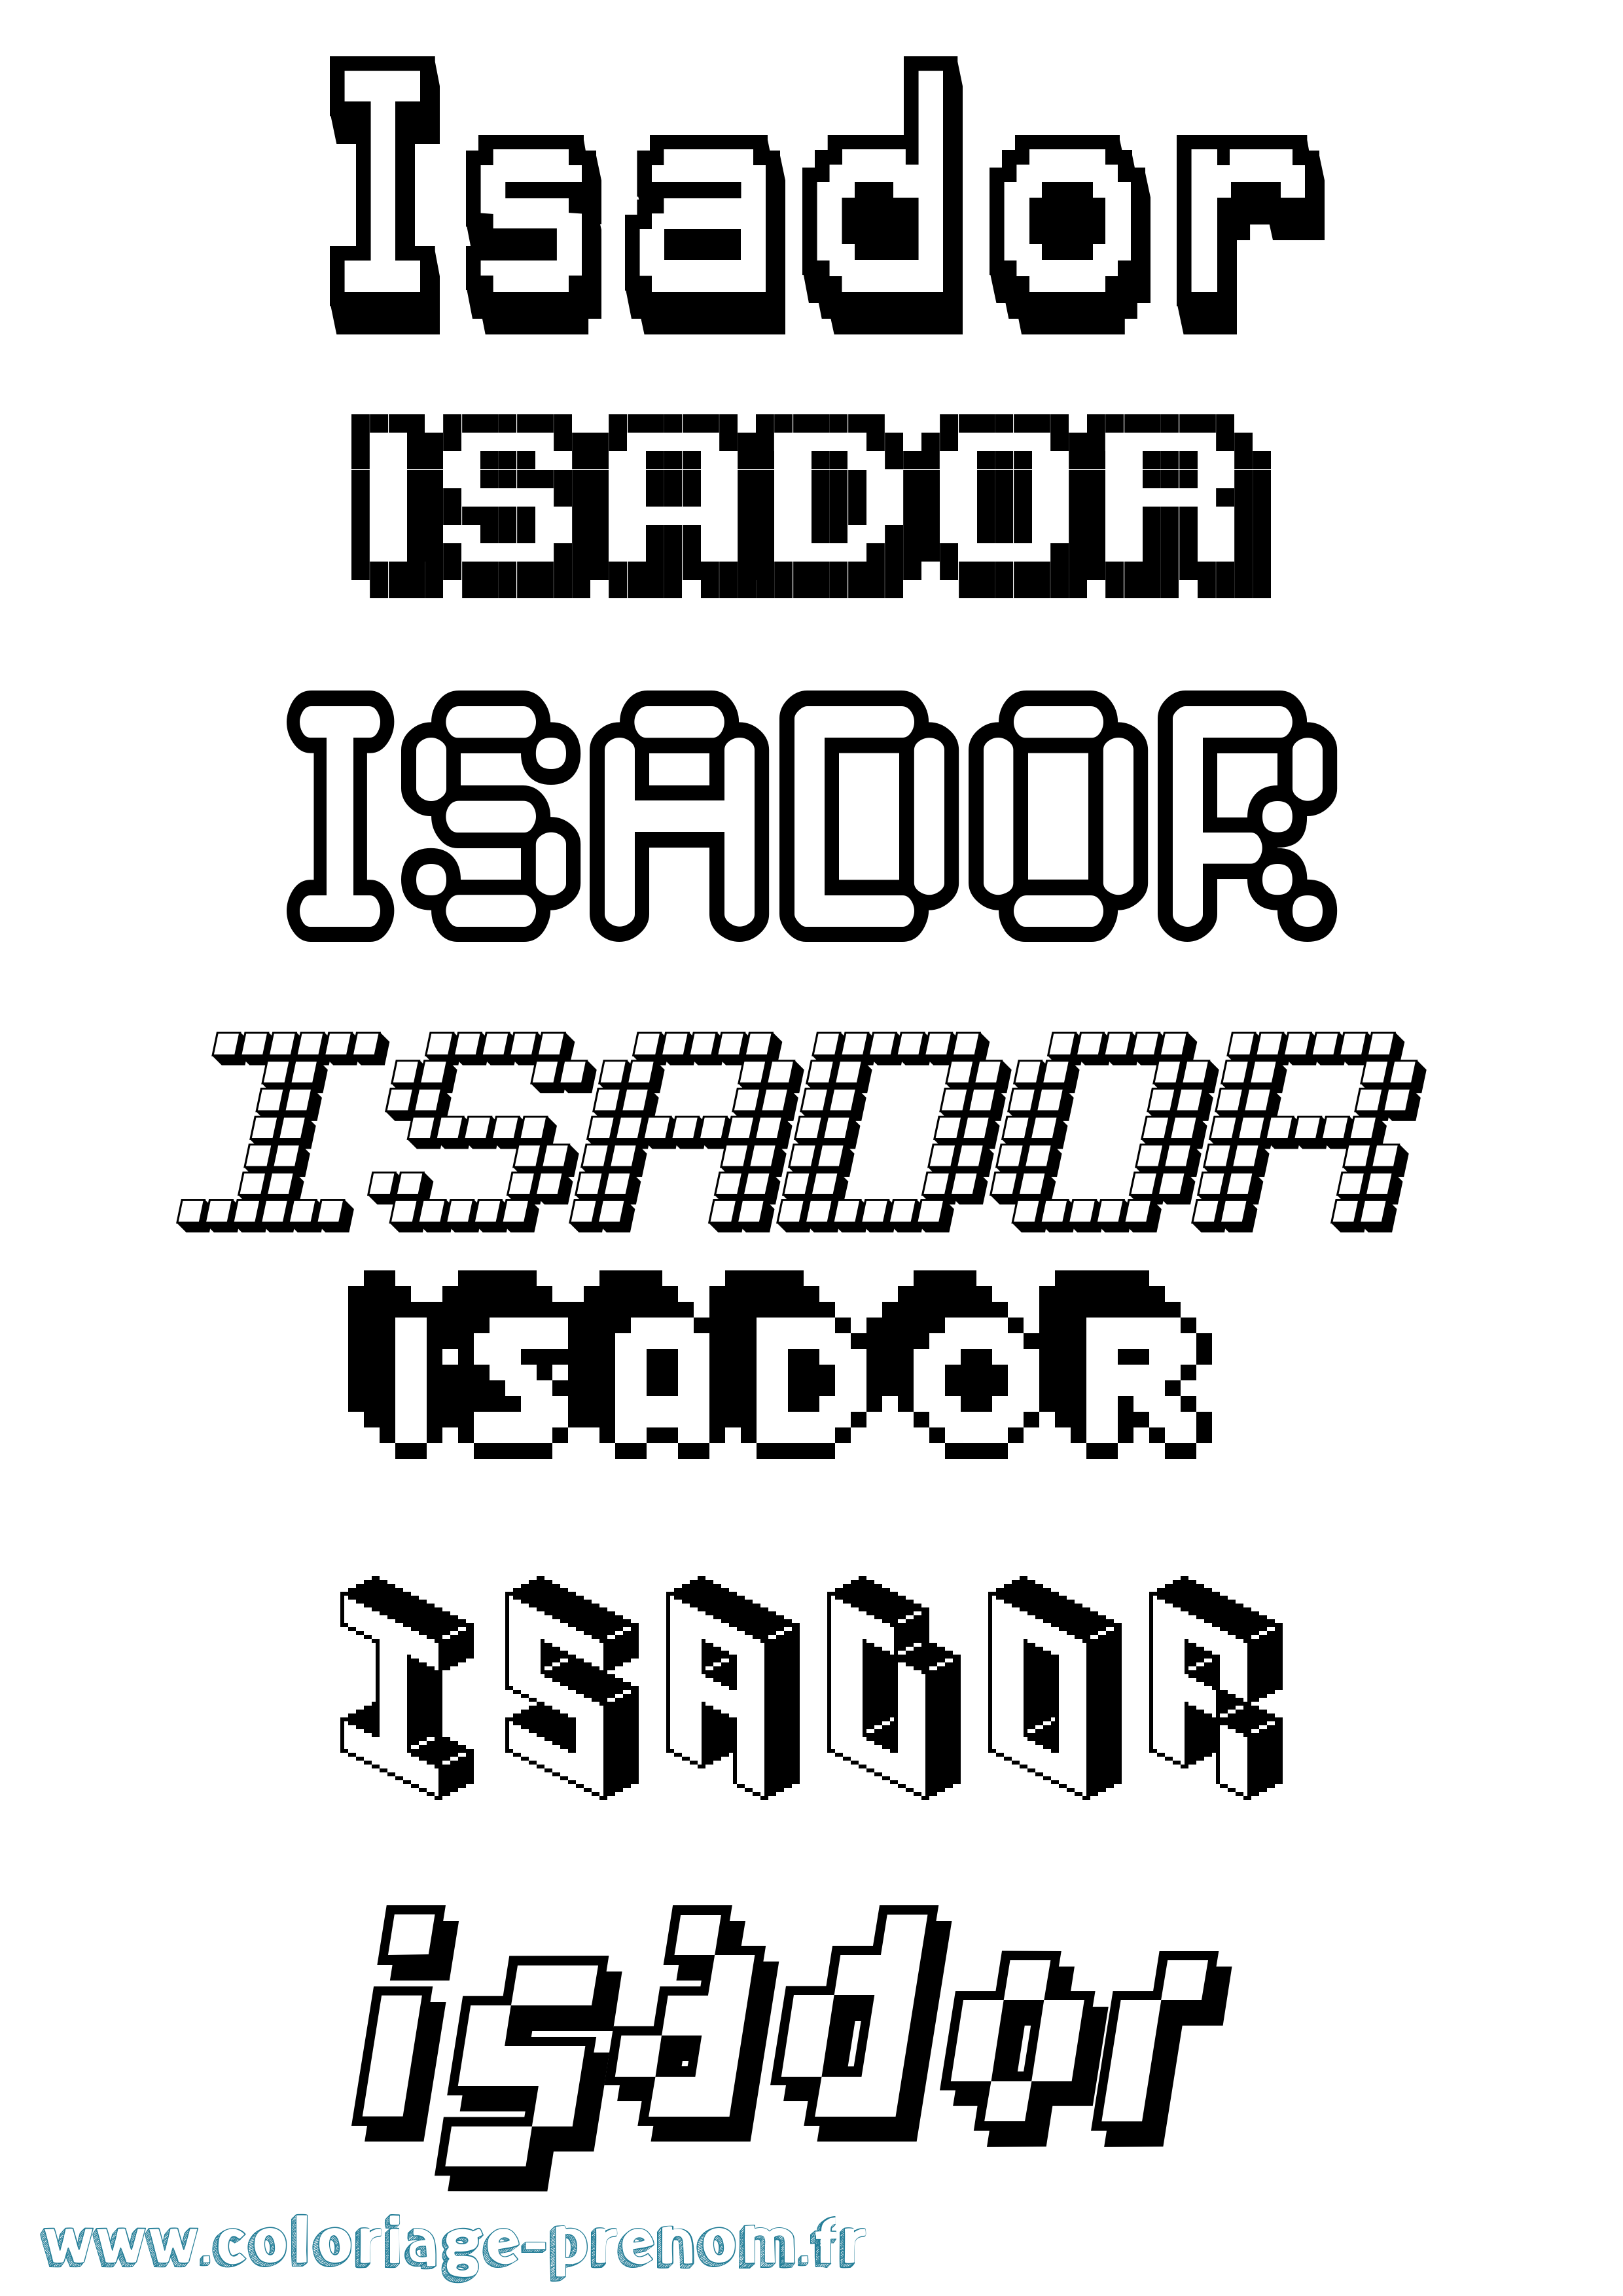 Coloriage prénom Isador Pixel